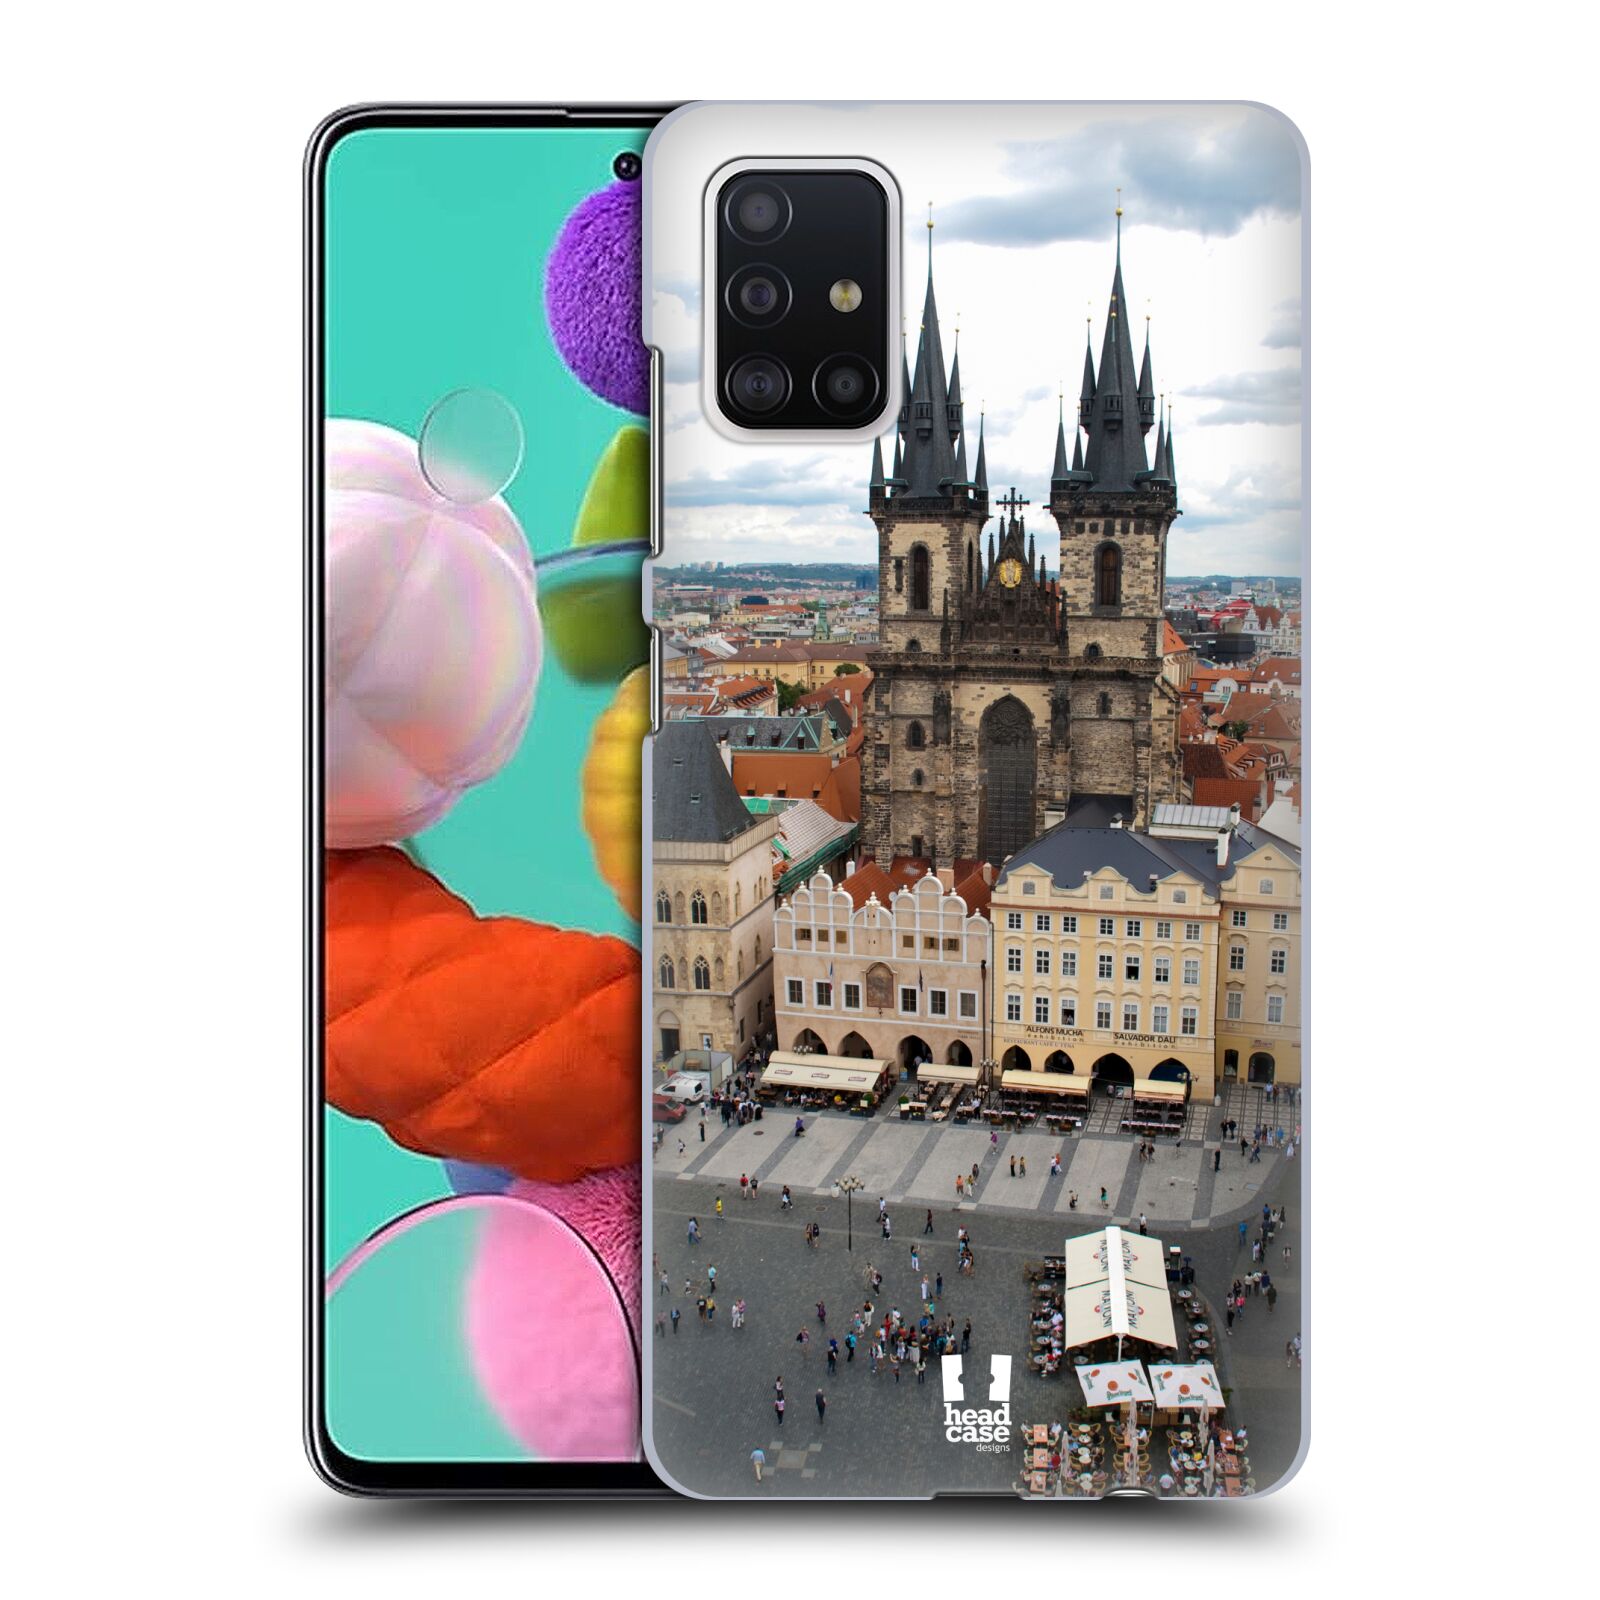 Pouzdro na mobil Samsung Galaxy A51 - HEAD CASE - vzor Města foto náměstí ČESKÁ REPUBLIKA, PRAHA, STAROMĚSTSKÉ NÁMĚSTÍ